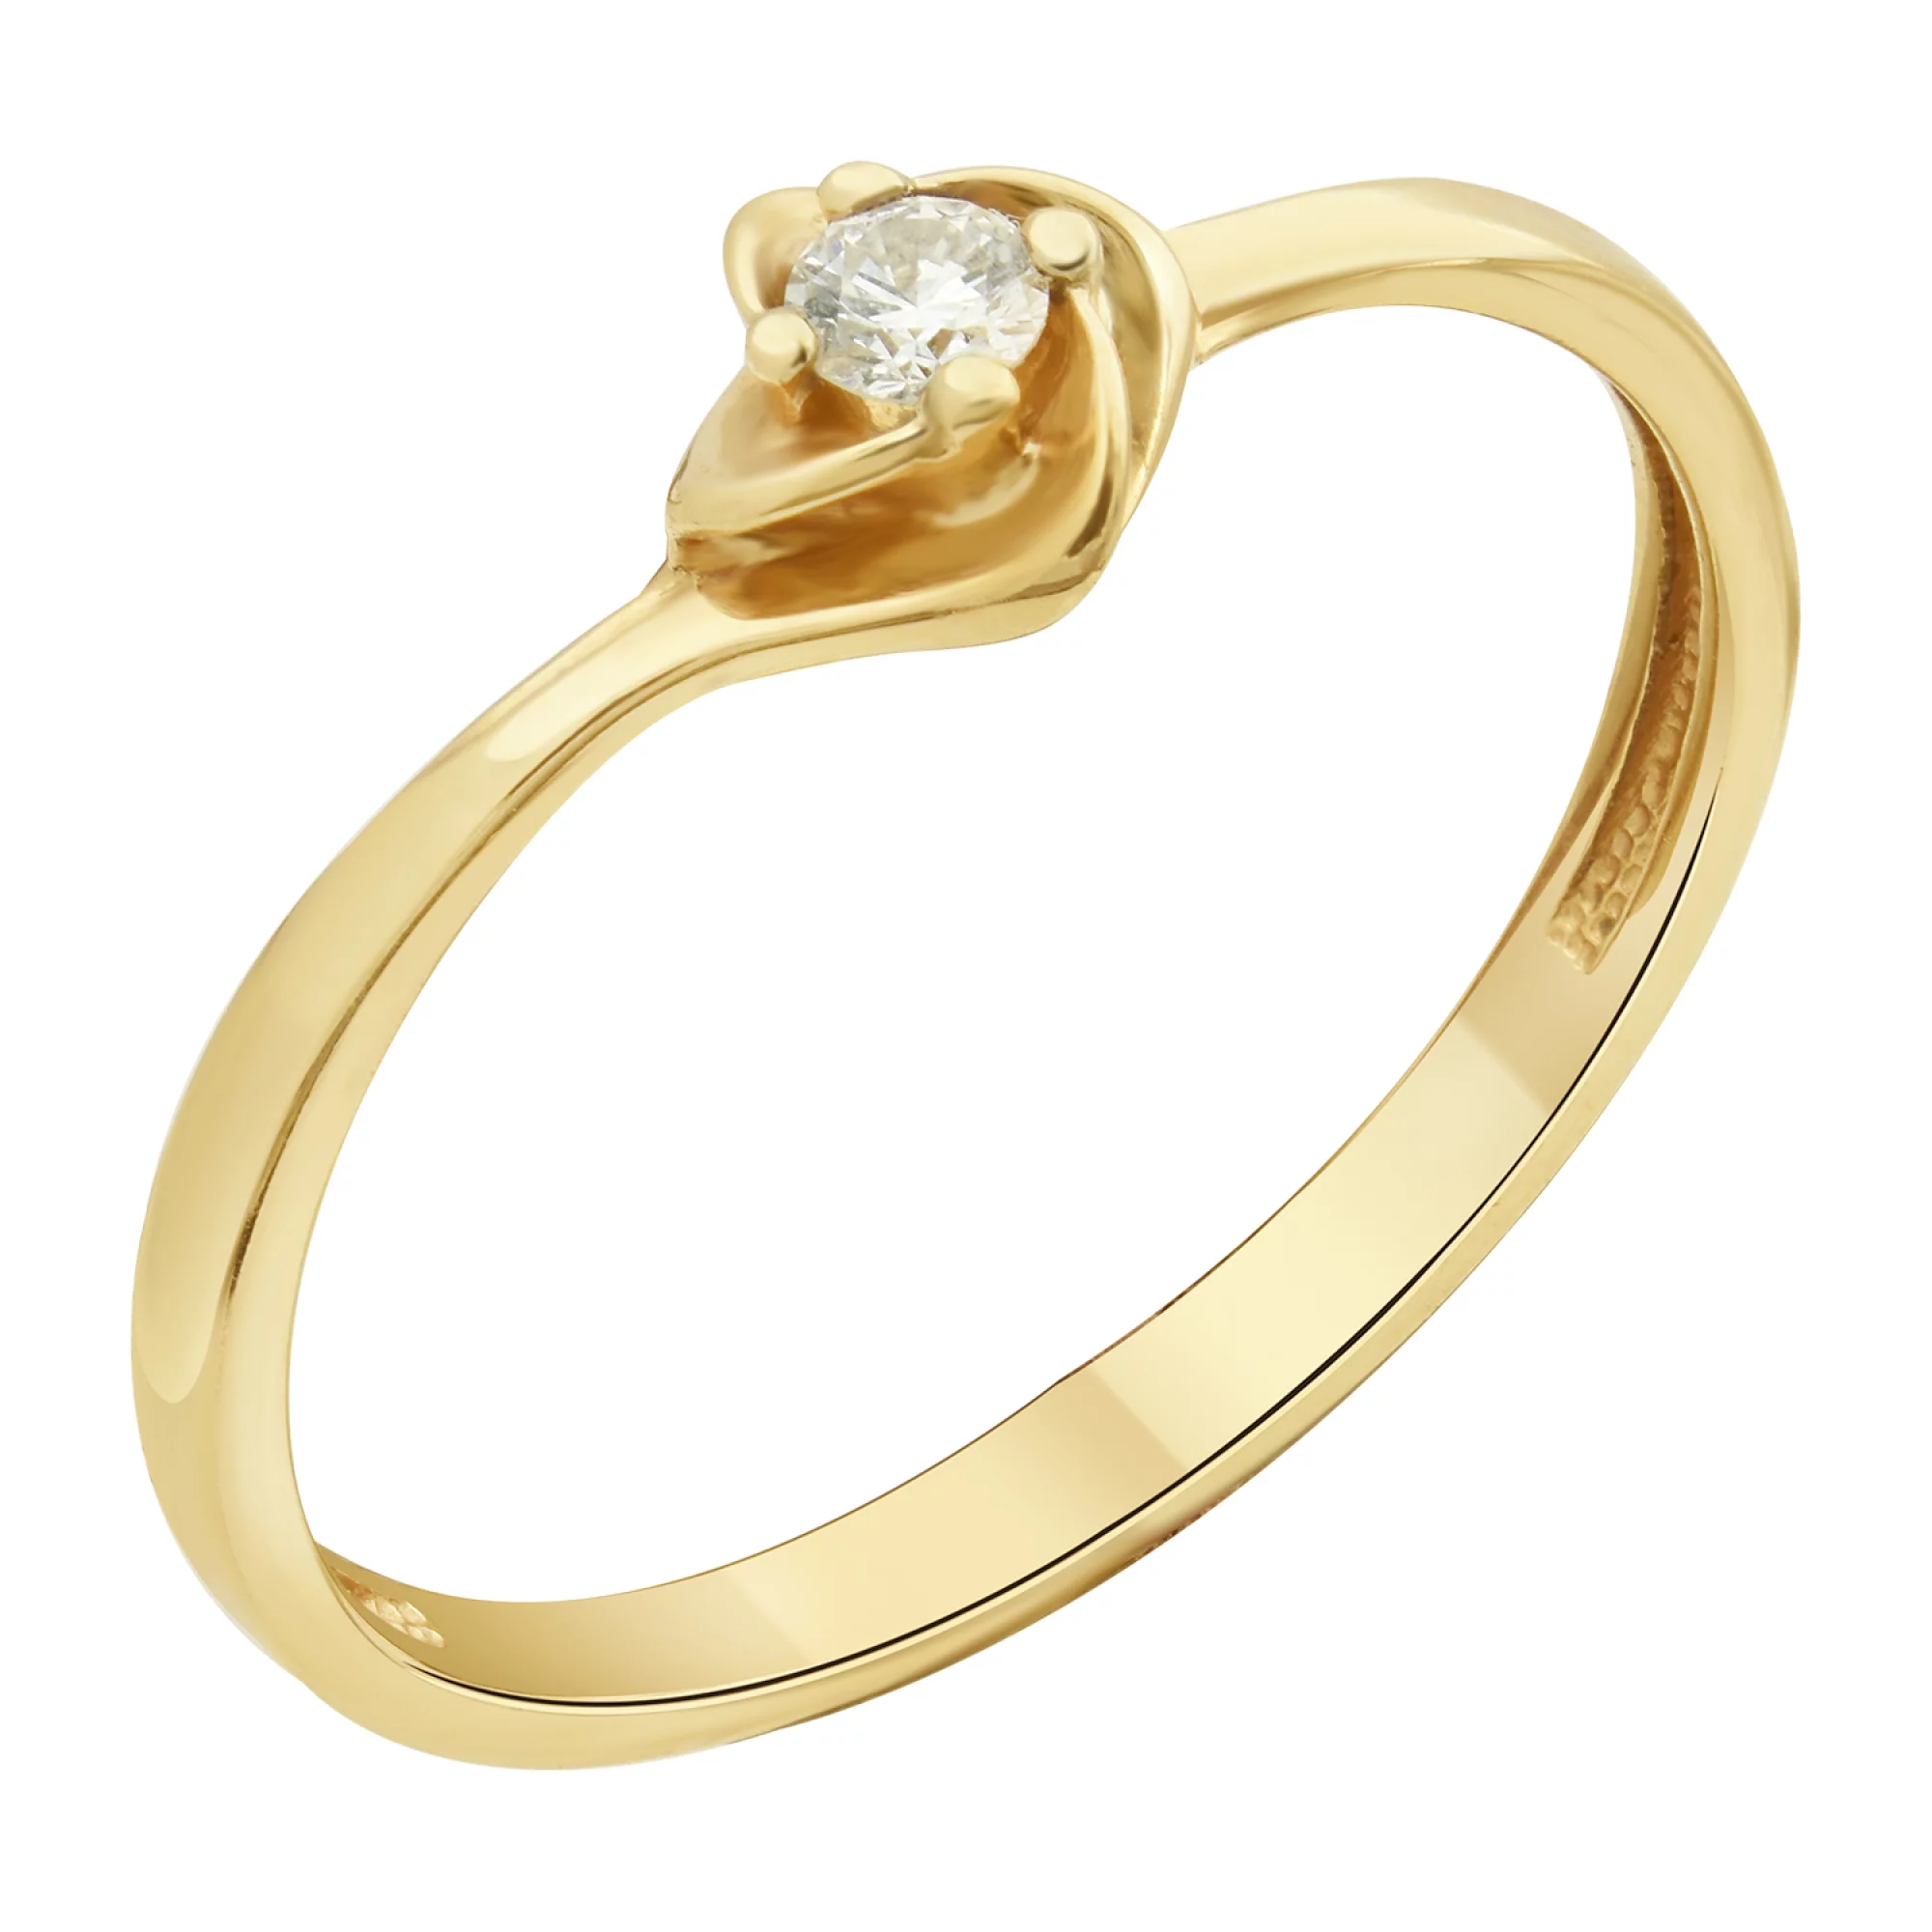 Помолвочное золотое кольцо с бриллиантом - 1706537 – изображение 1